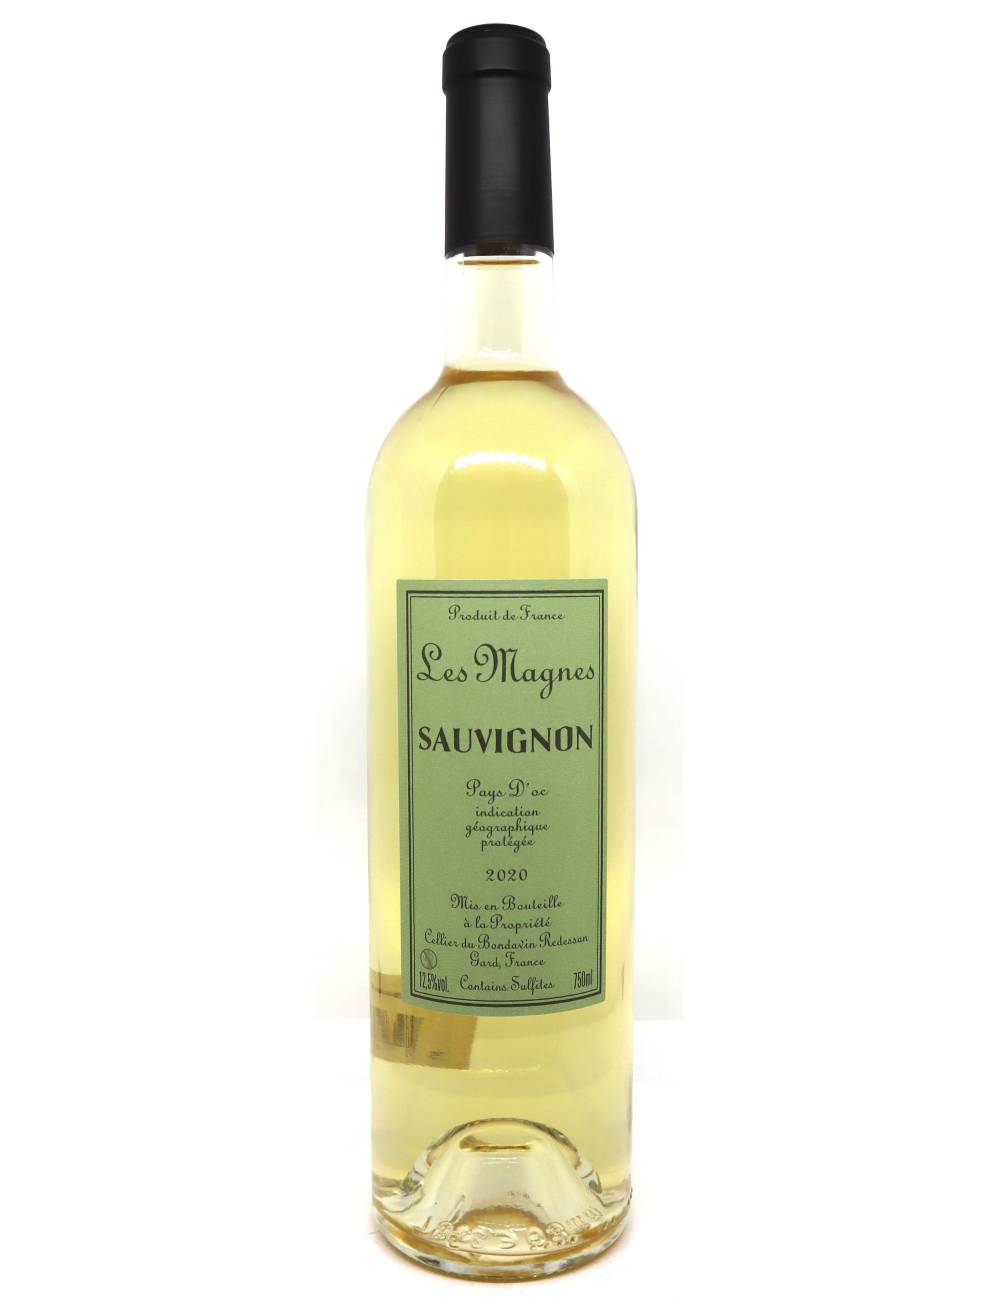 Coffret vin Indispensables de l'été vin blanc, vin rouge, Vin Malin